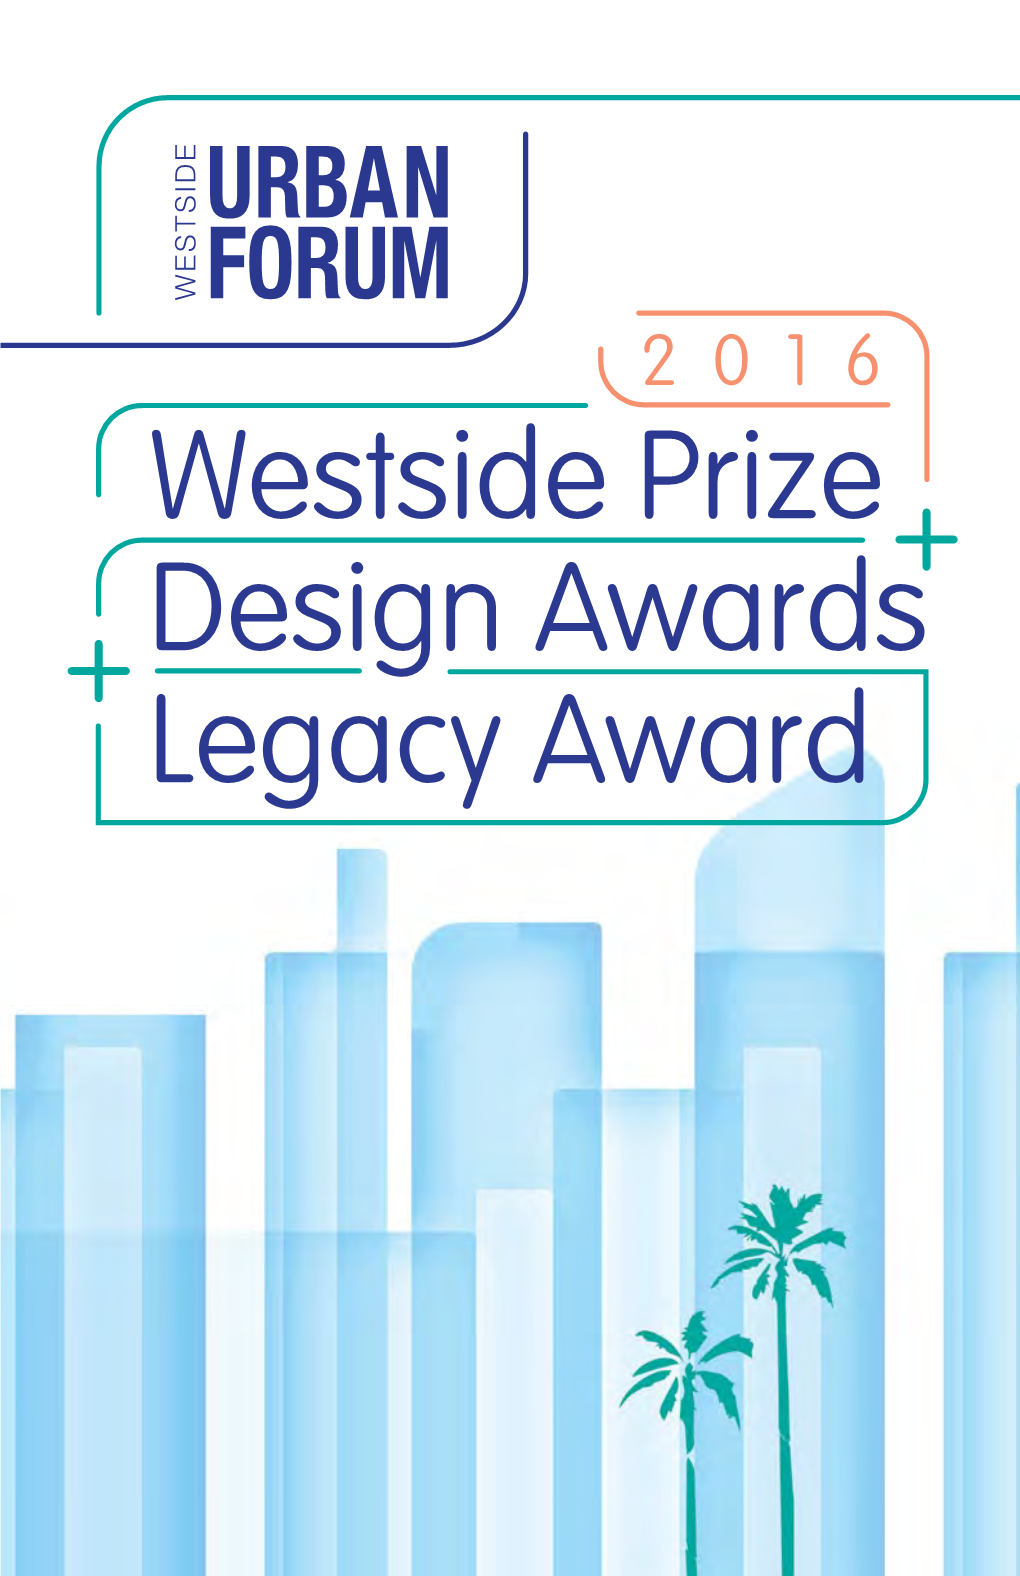 Westside Prize Design Awards Legacy Award